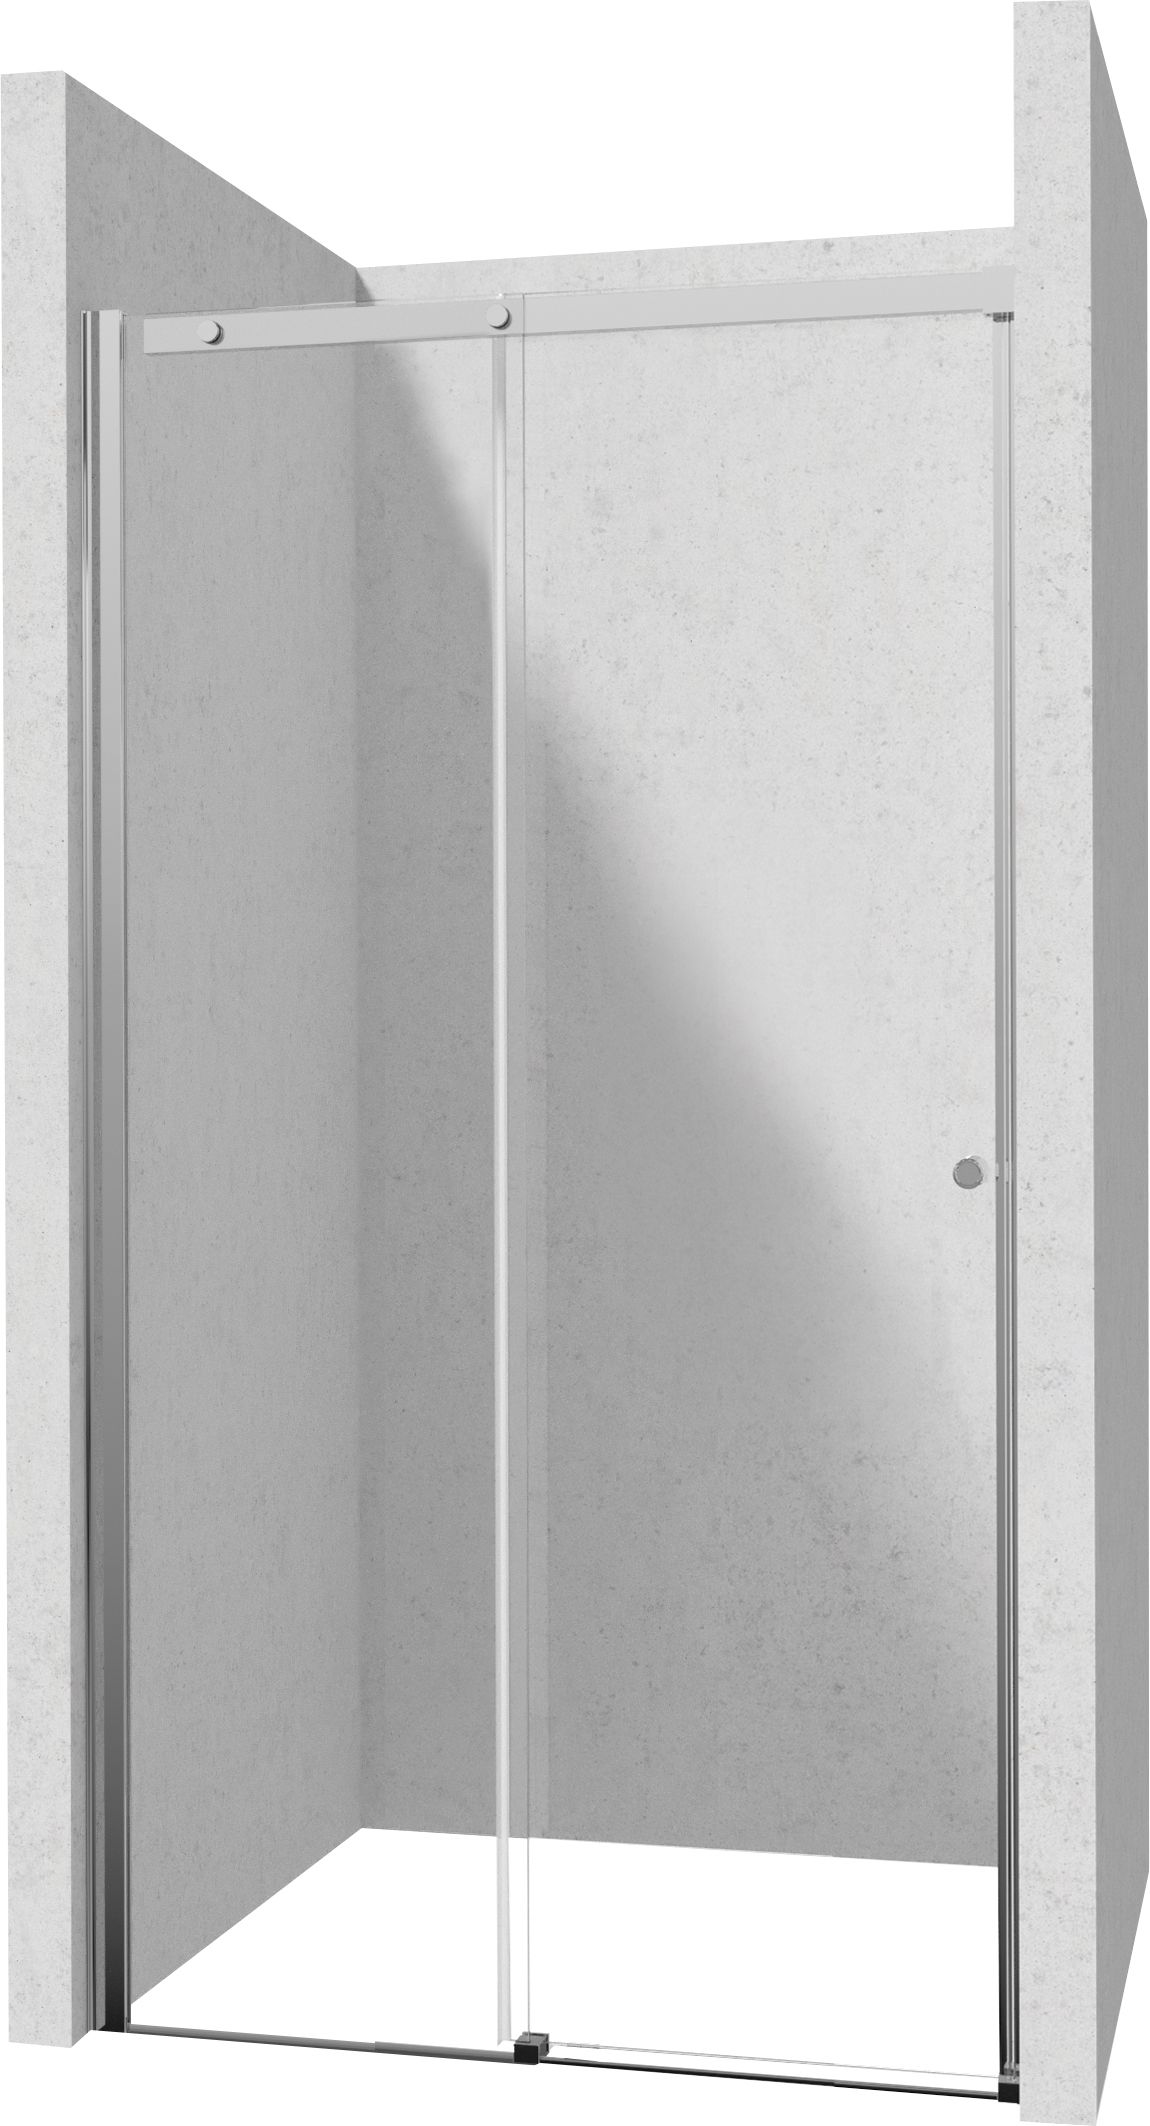 Drzwi prysznicowe 100 cm - przesuwne - KTSP010P - Główne zdjęcie produktowe